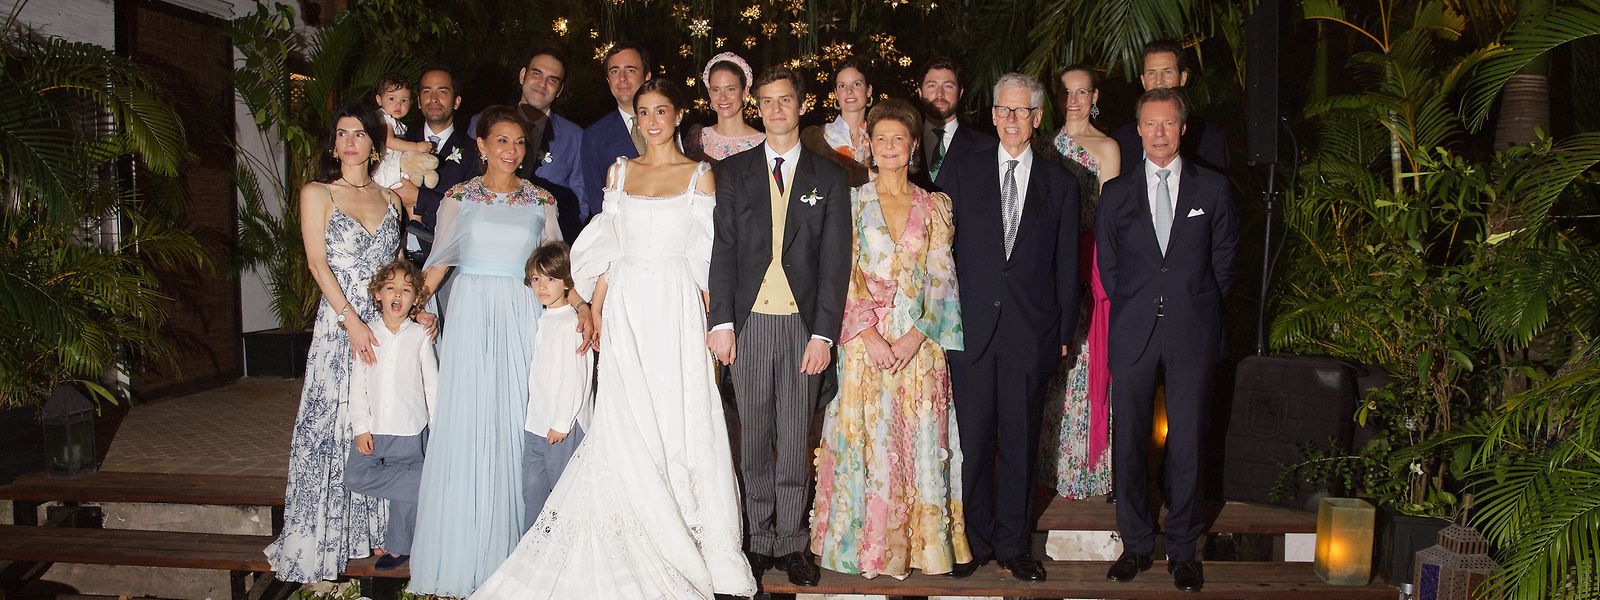 Les mariés avec les membres de leur famille, dont la mère du marié, Margaretha de Liechtenstein (1er rang, 3e à partir de la droite) - la sœur du Grand-Duc Henri (1er rang, 1ère à partir de la droite) - avec son mari Nicolas de Liechtenstein (1er rang, 2e à partir de la droite).